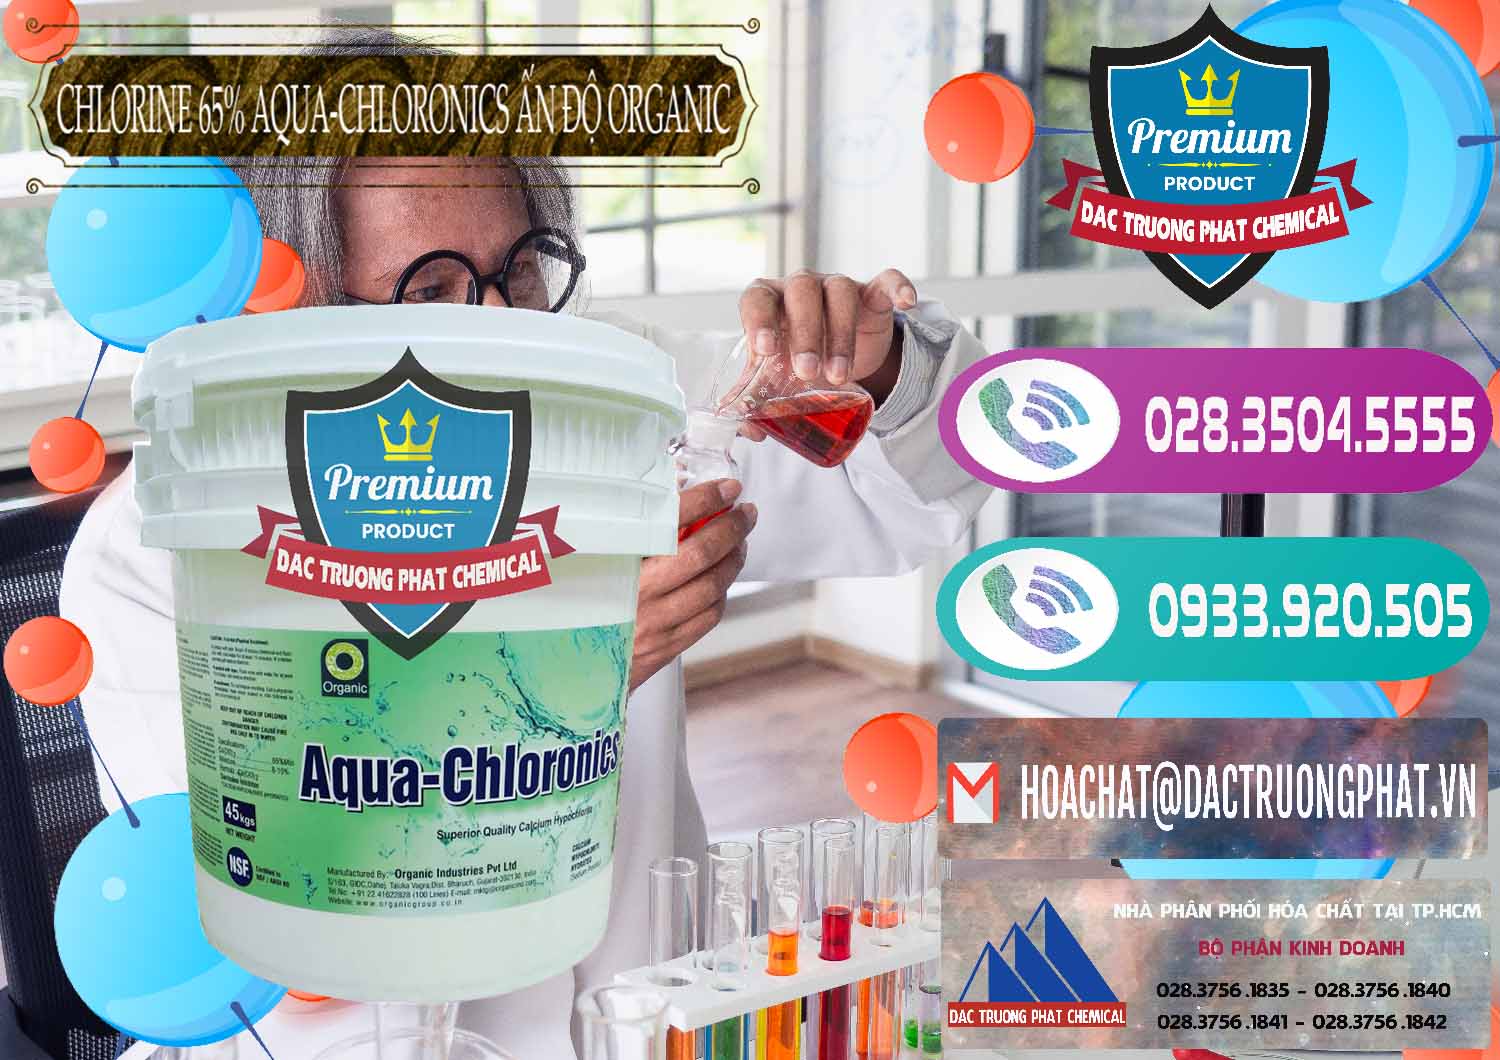 Đơn vị bán _ cung cấp Chlorine – Clorin 65% Aqua-Chloronics Ấn Độ Organic India - 0210 - Công ty chuyên cung cấp và kinh doanh hóa chất tại TP.HCM - hoachatxulynuoc.com